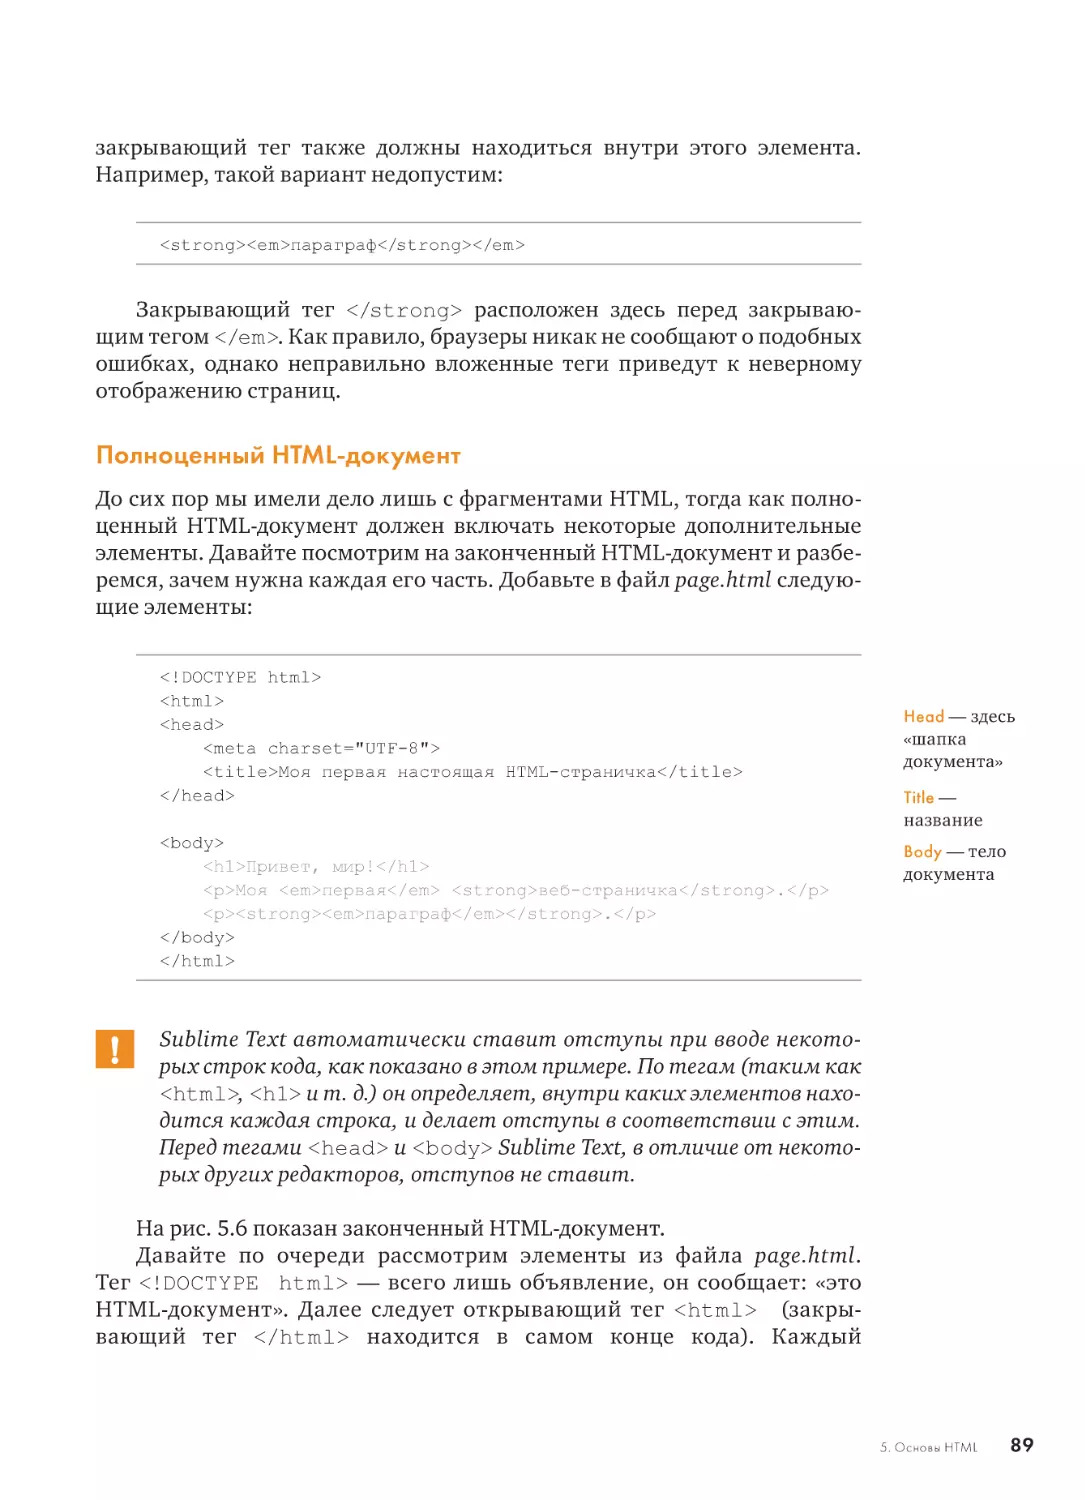 Полноценный HTML-документ